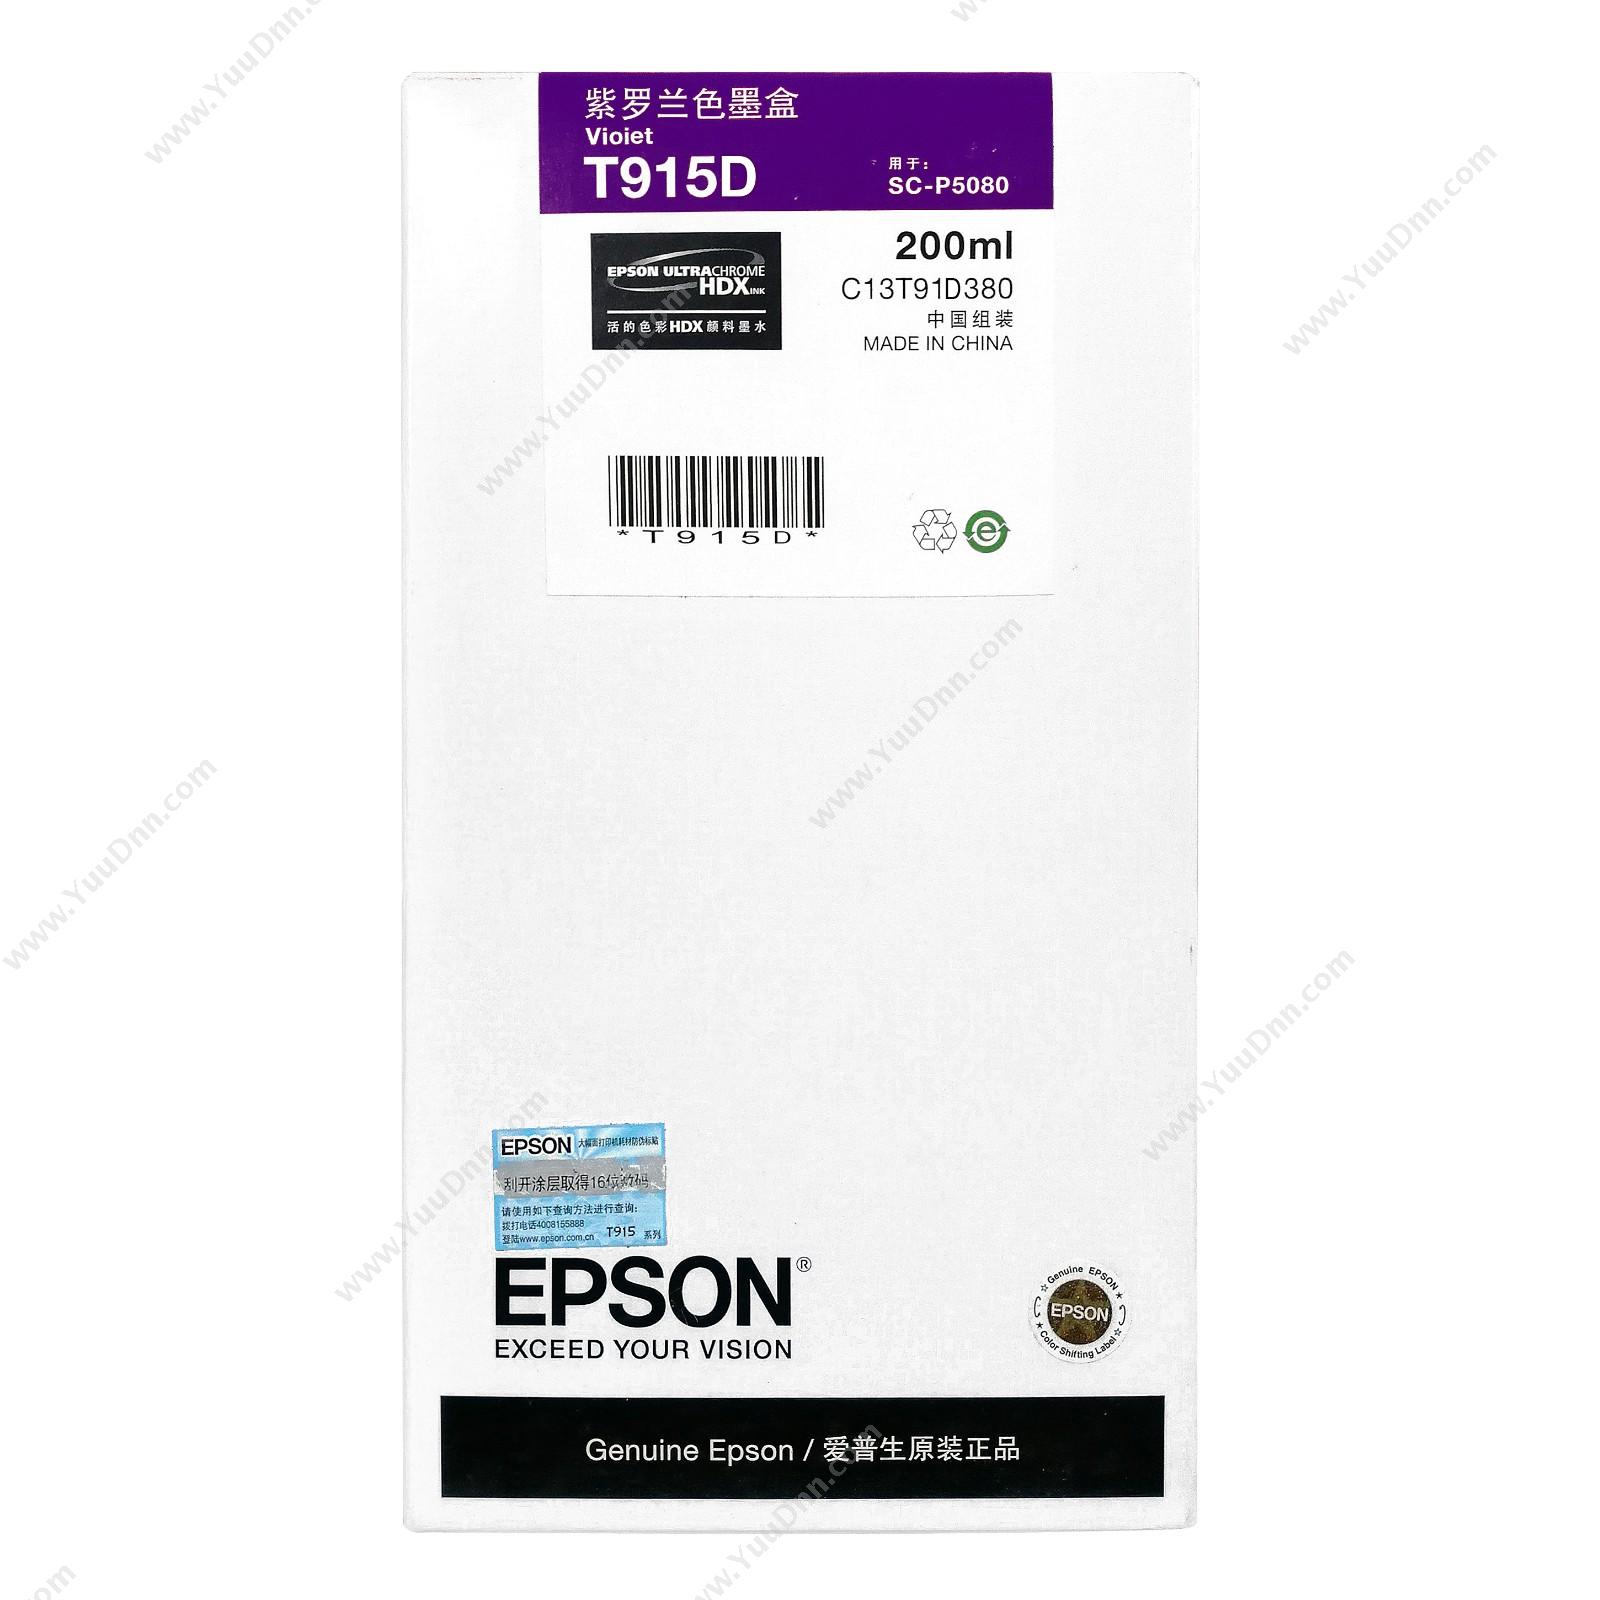 爱普生 Epson P5080紫罗兰色200ml(C13T915D80) 墨盒